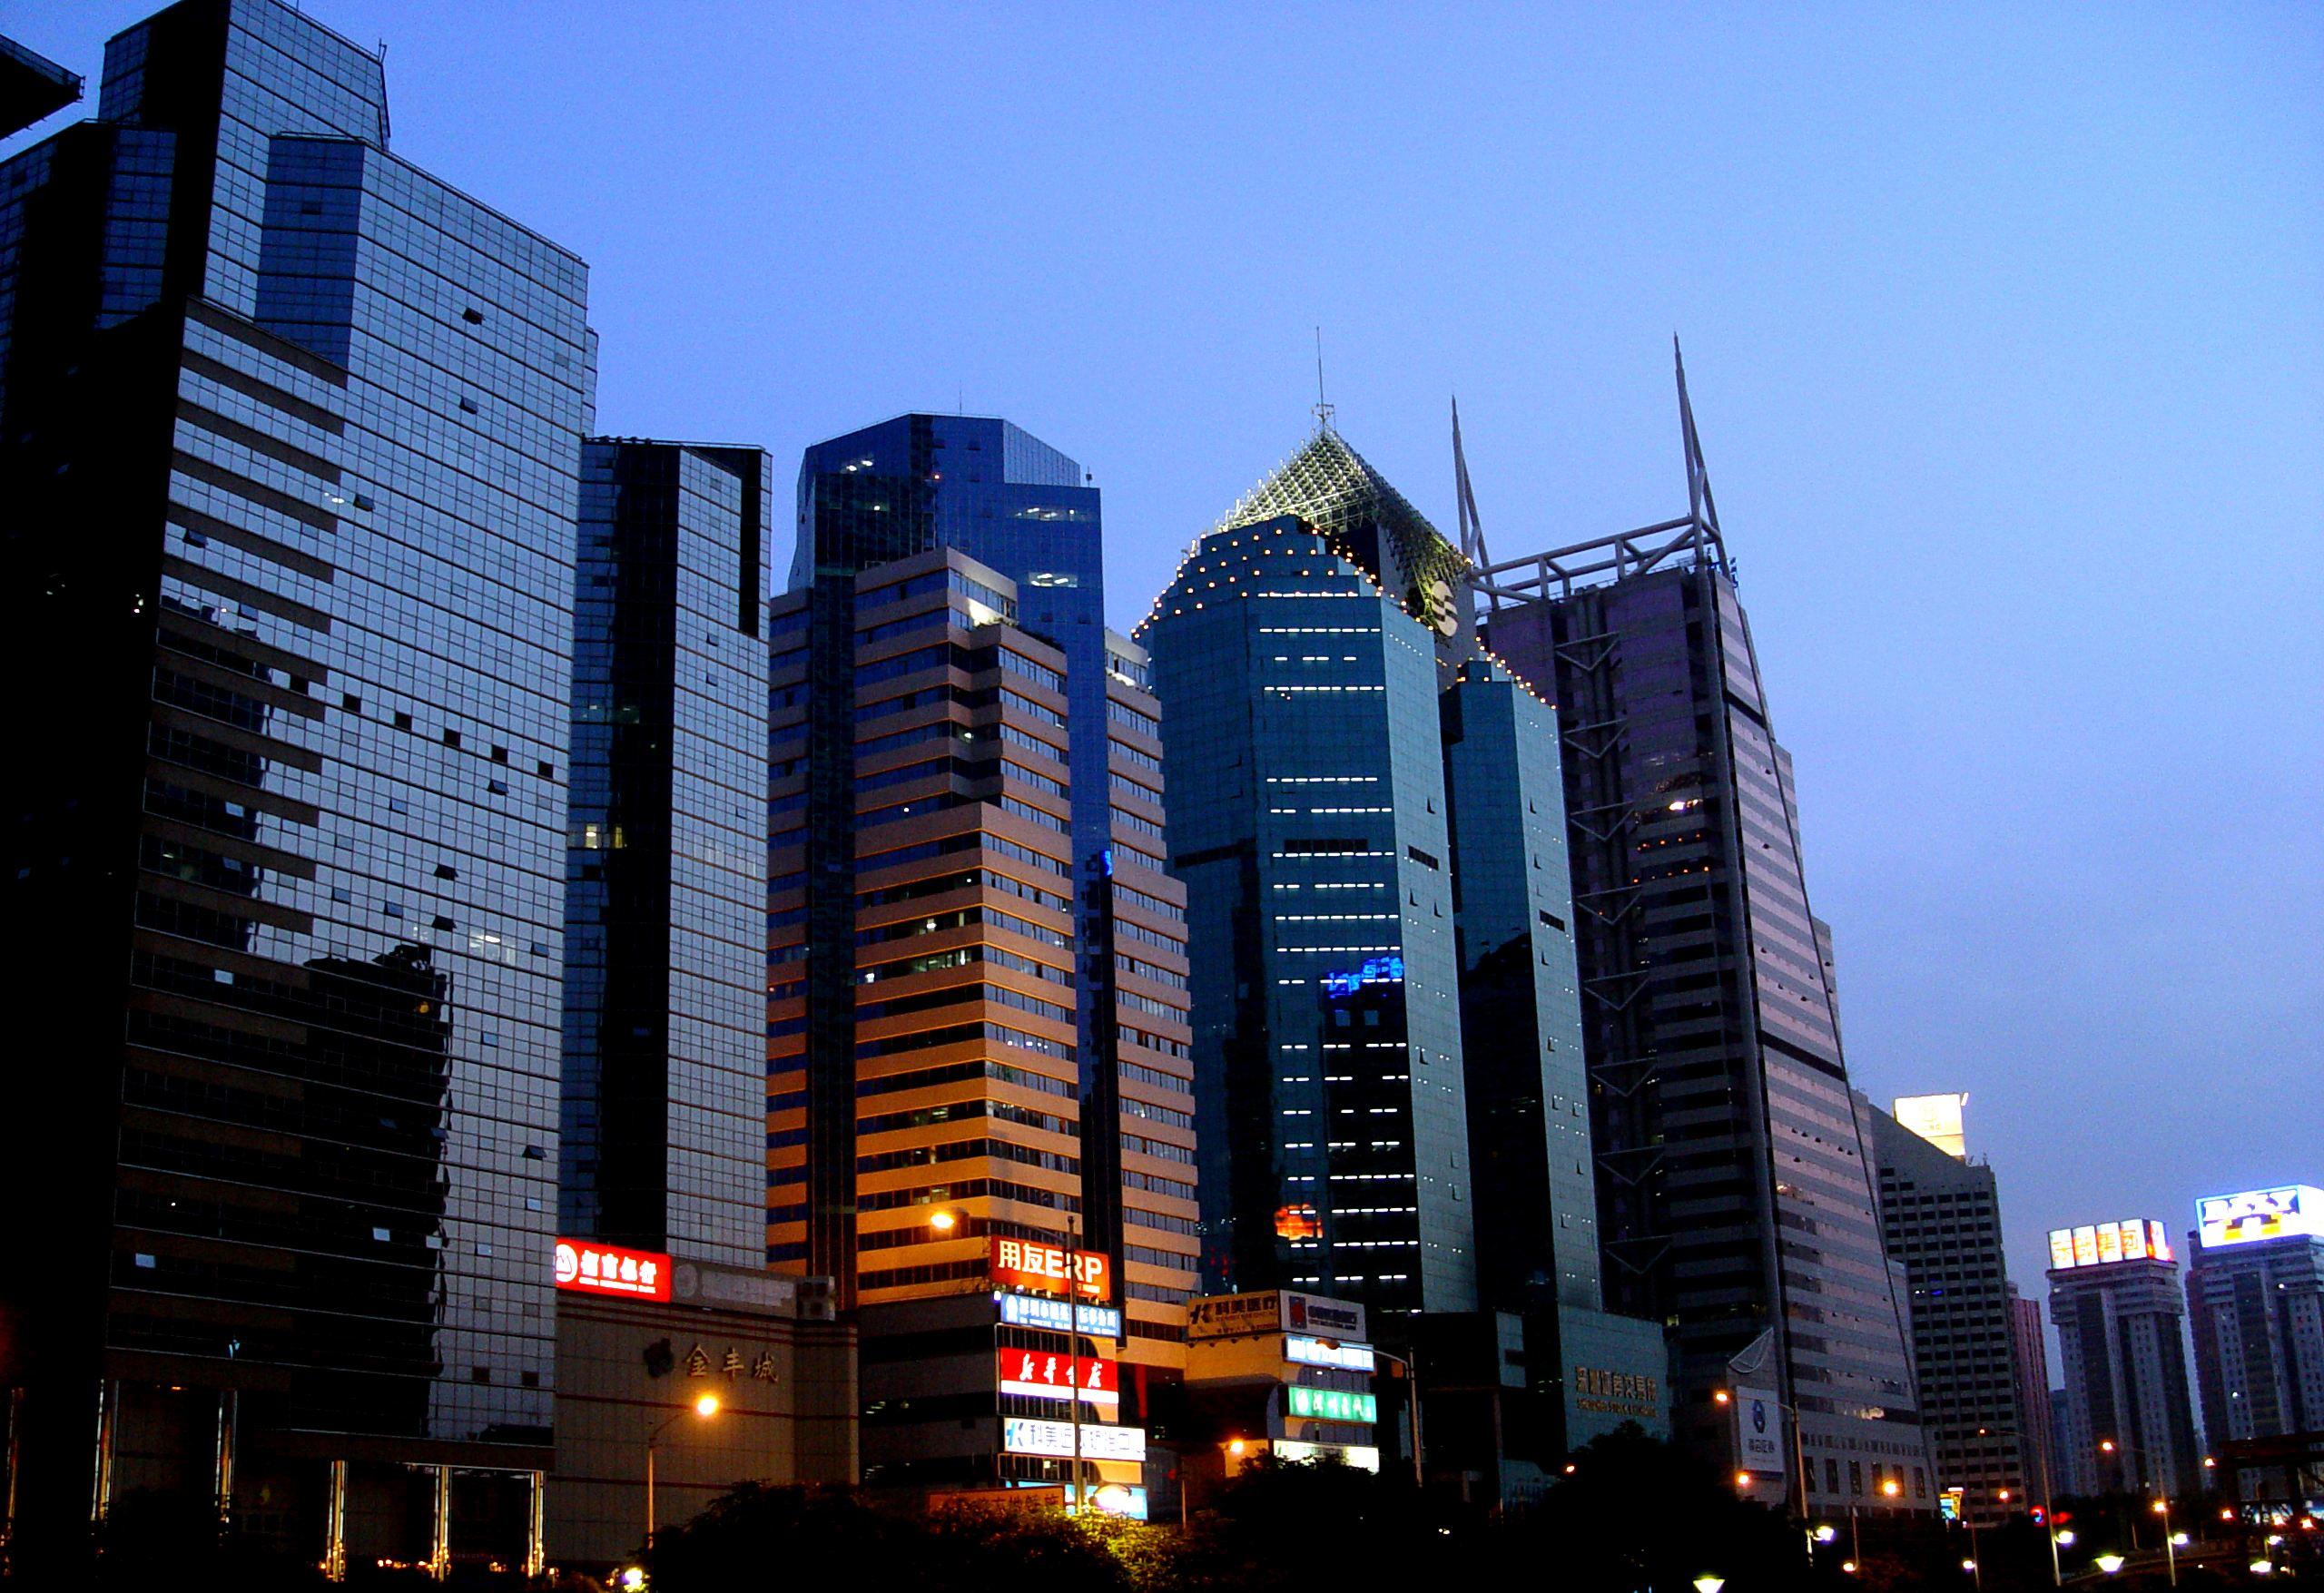 深圳北方大厦图片